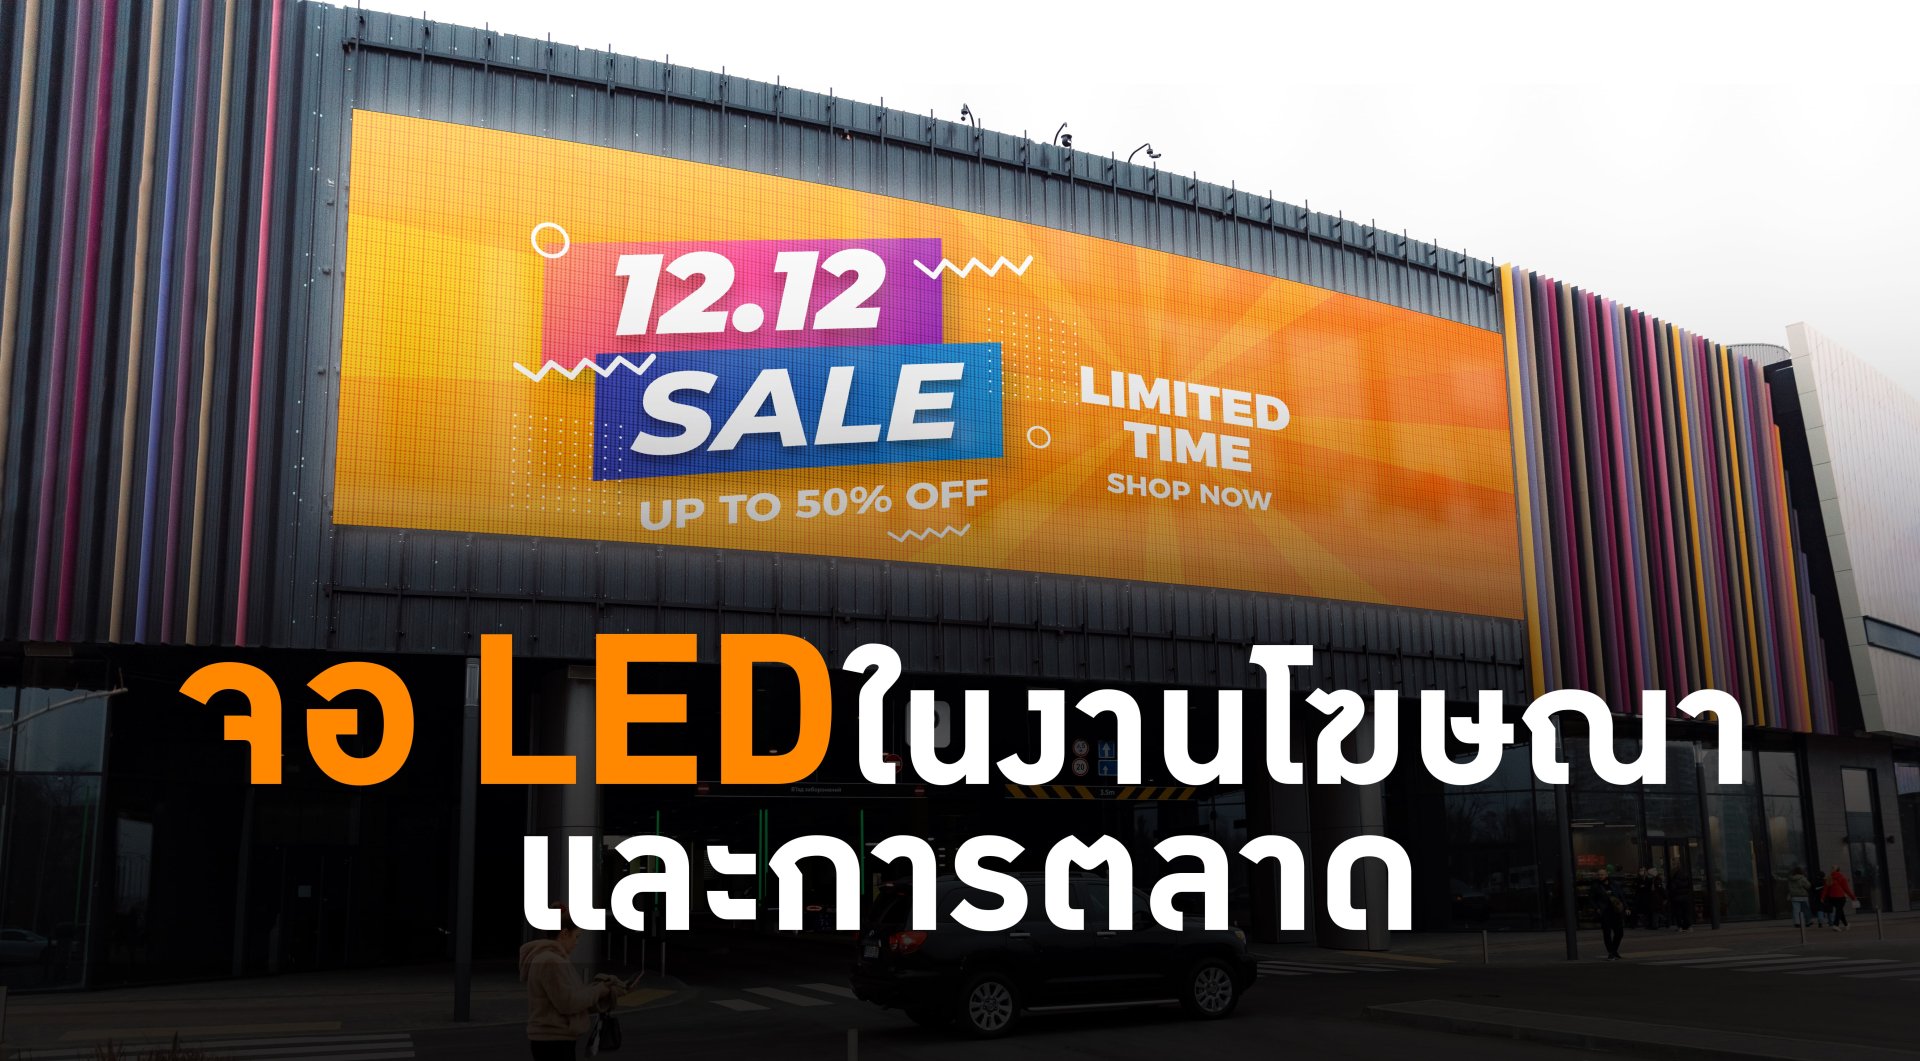 ประโยชน์และการนำไปใช้ของ “จอ LED” ในงานโฆษณาและการตลาด